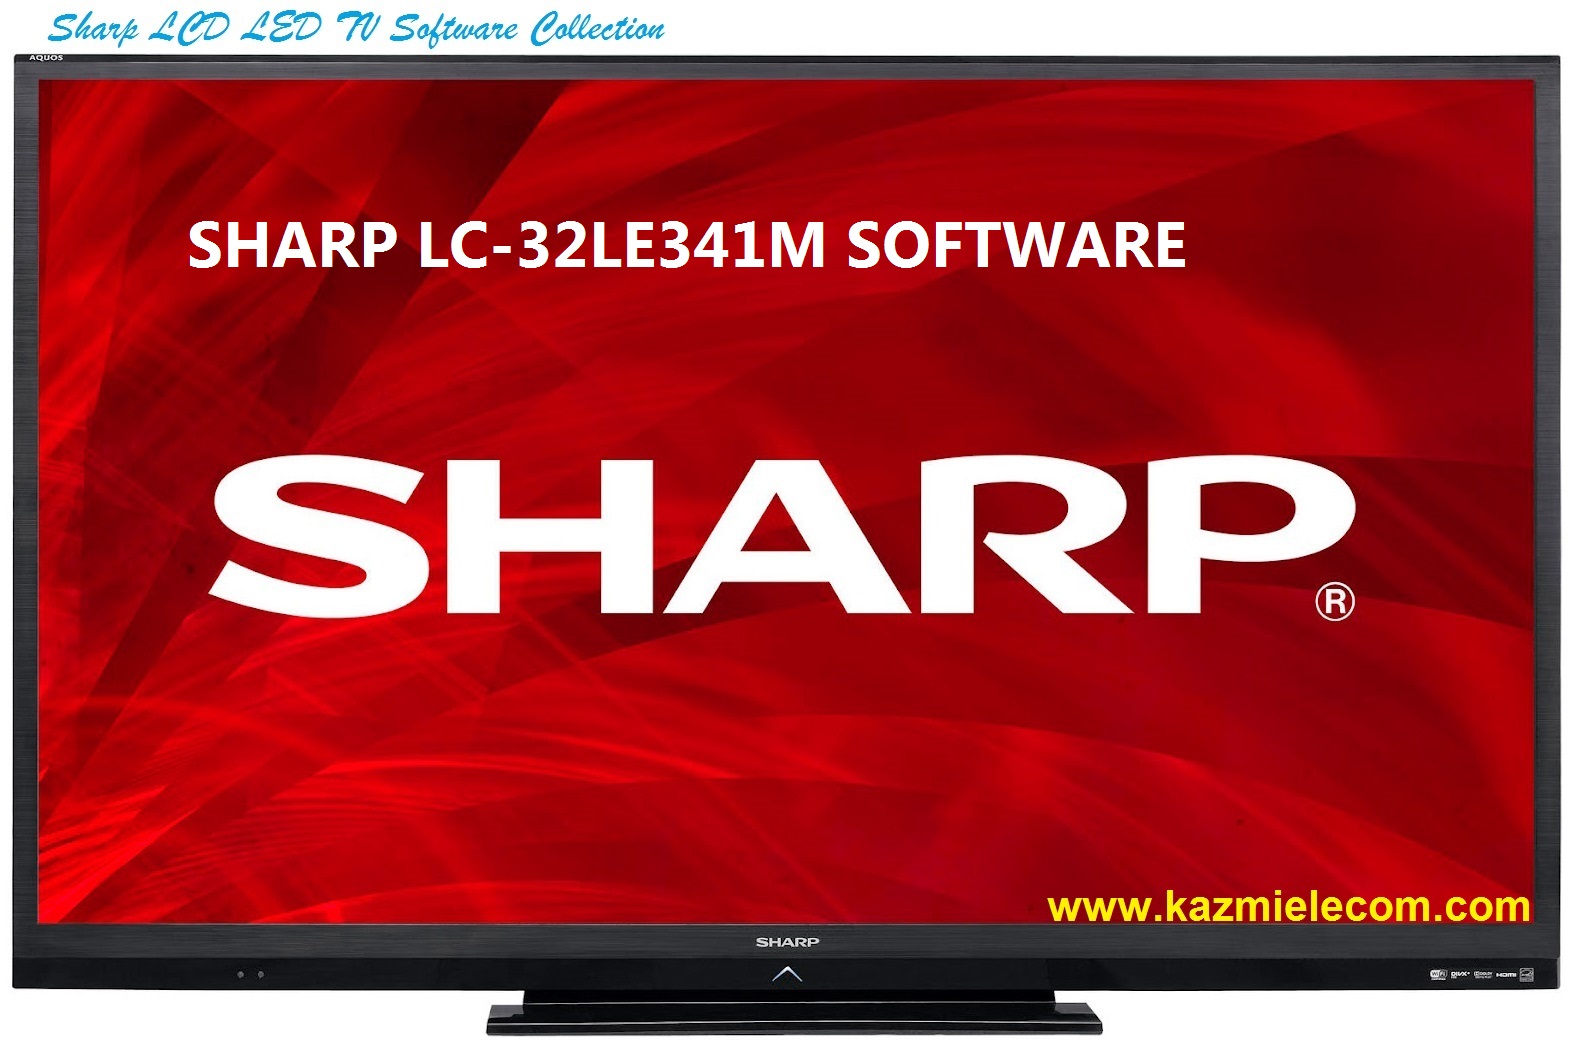 Sharp Lc-32Le341M